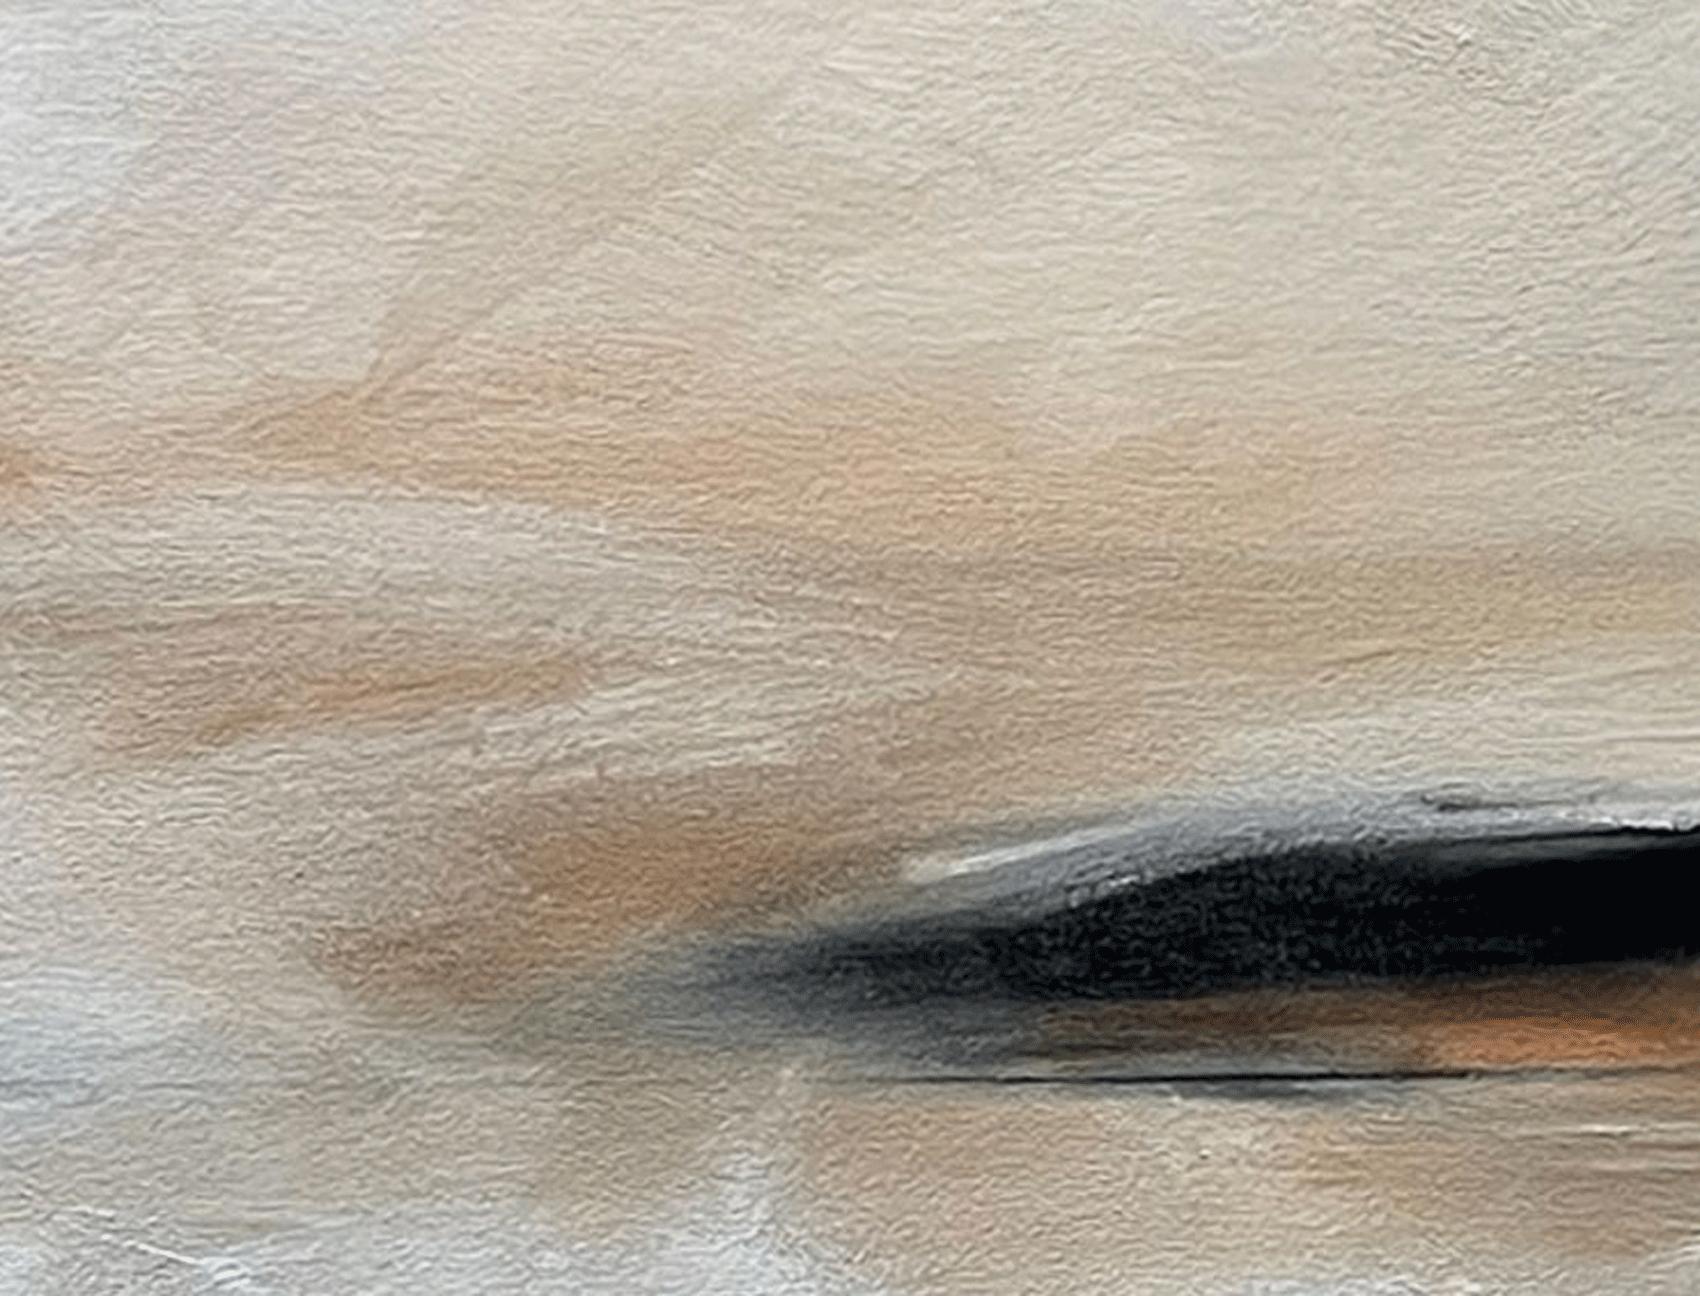 Kiss the Space, Gemälde, Öl auf Leinwand (Abstrakt), Painting, von Judy Hintz Cox